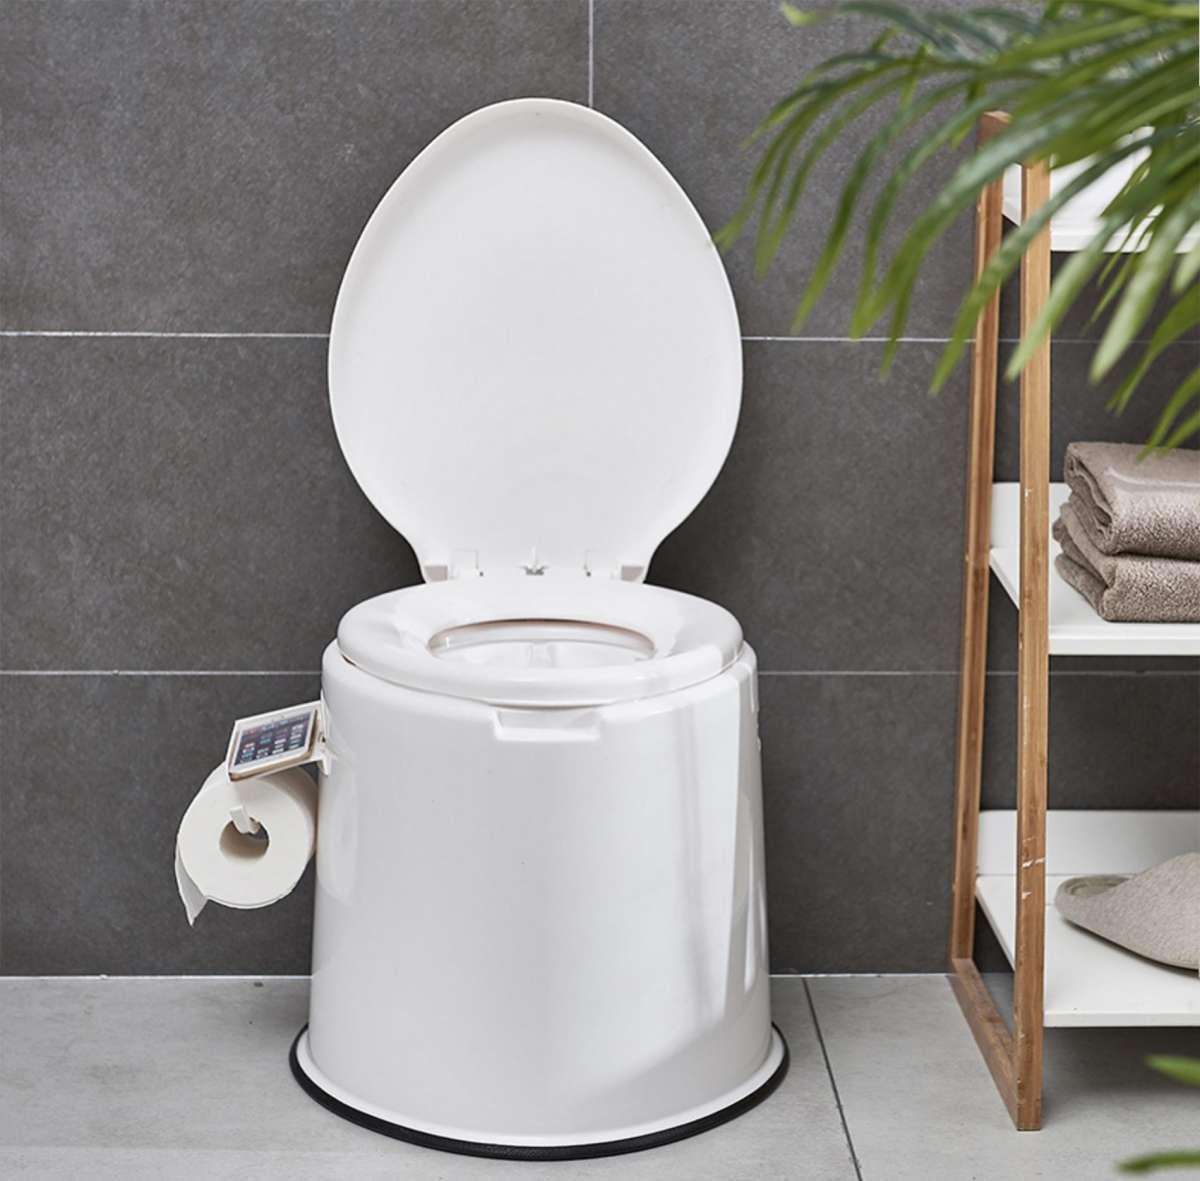 Portable toilet ส้วมคนแก่ ส้วมผู้ป่วย ส้วมเคลื่อนที่ ที่นั่งถ่ายเคลื่อนที่ สุขภัณฑ์เคลื่อนที่ ขนาด 41x49x37.5cm.